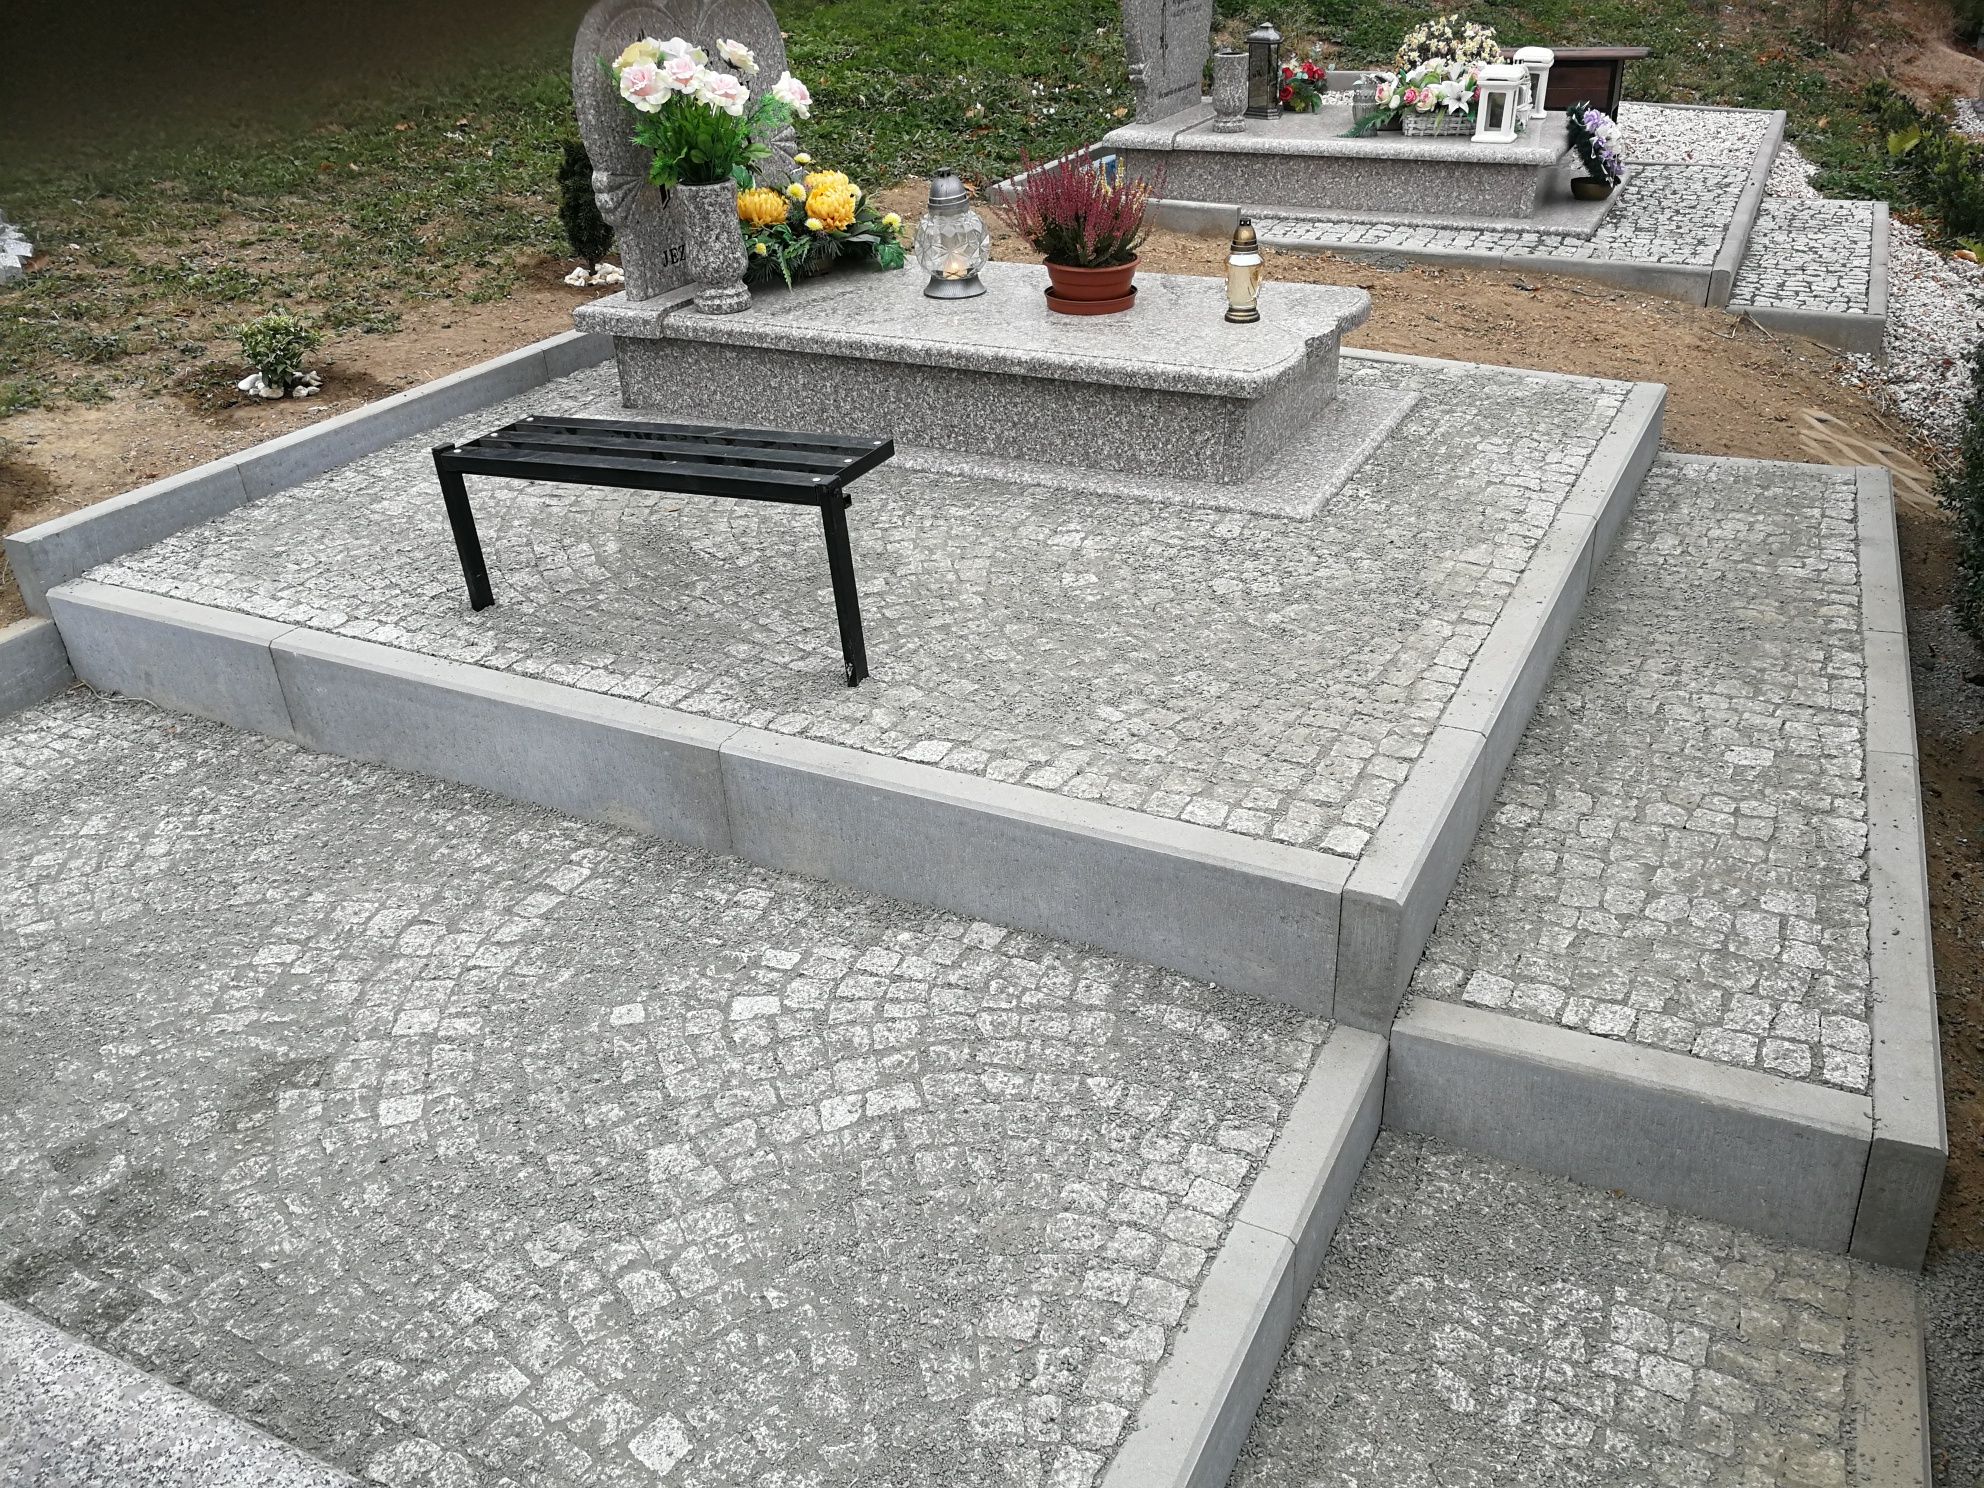 Kostka wokół grobów na cmentarzu/podnoszenie zapadniętych nagrobkow